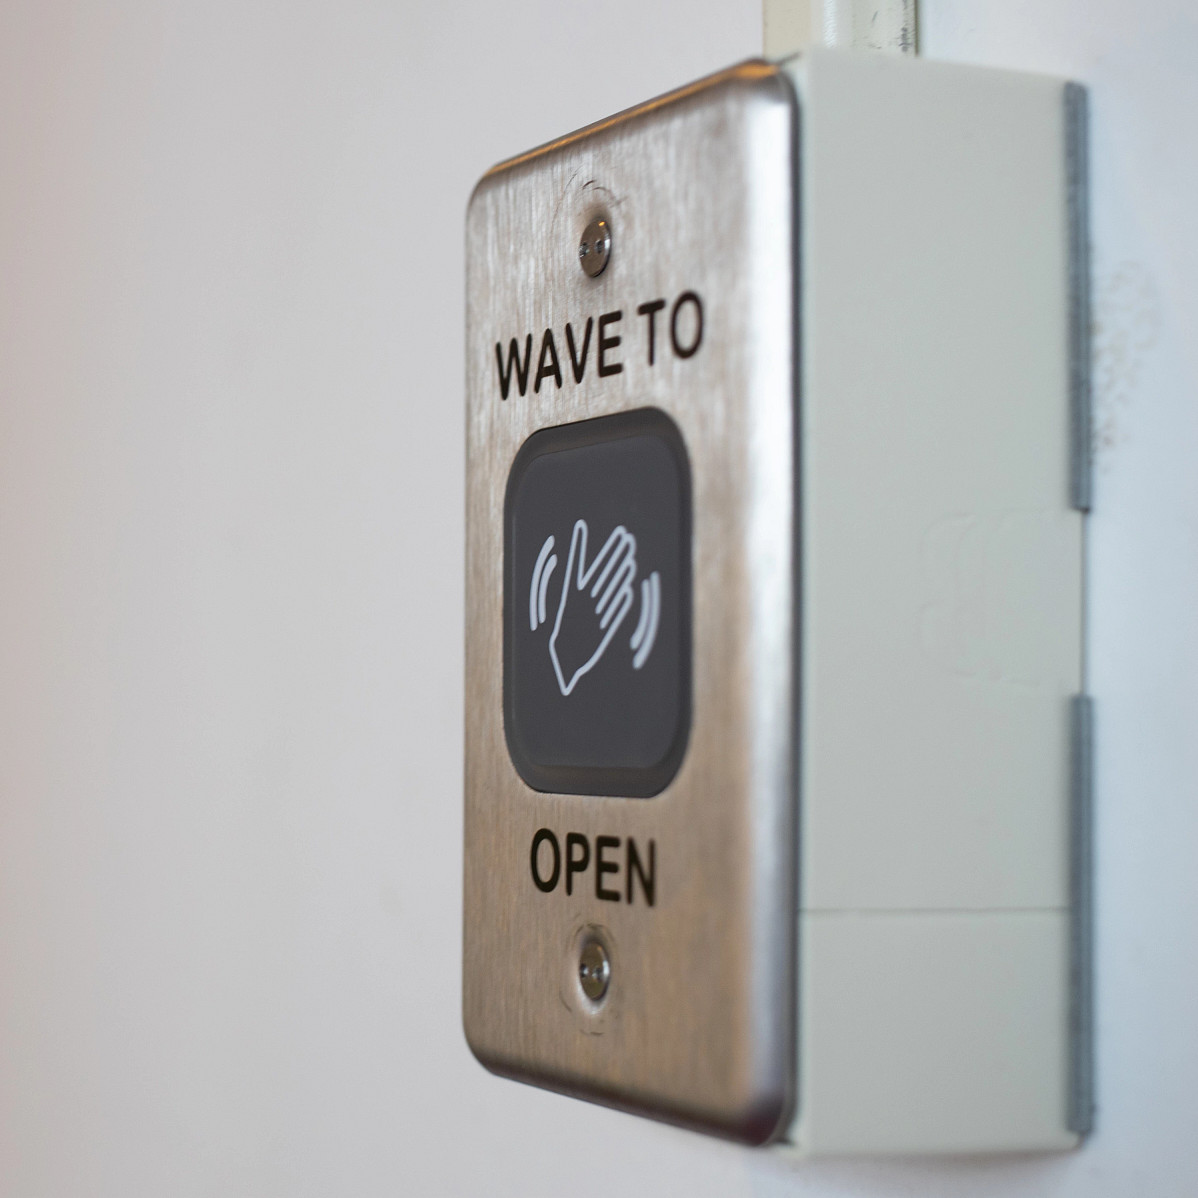 Wave-to-open door opener